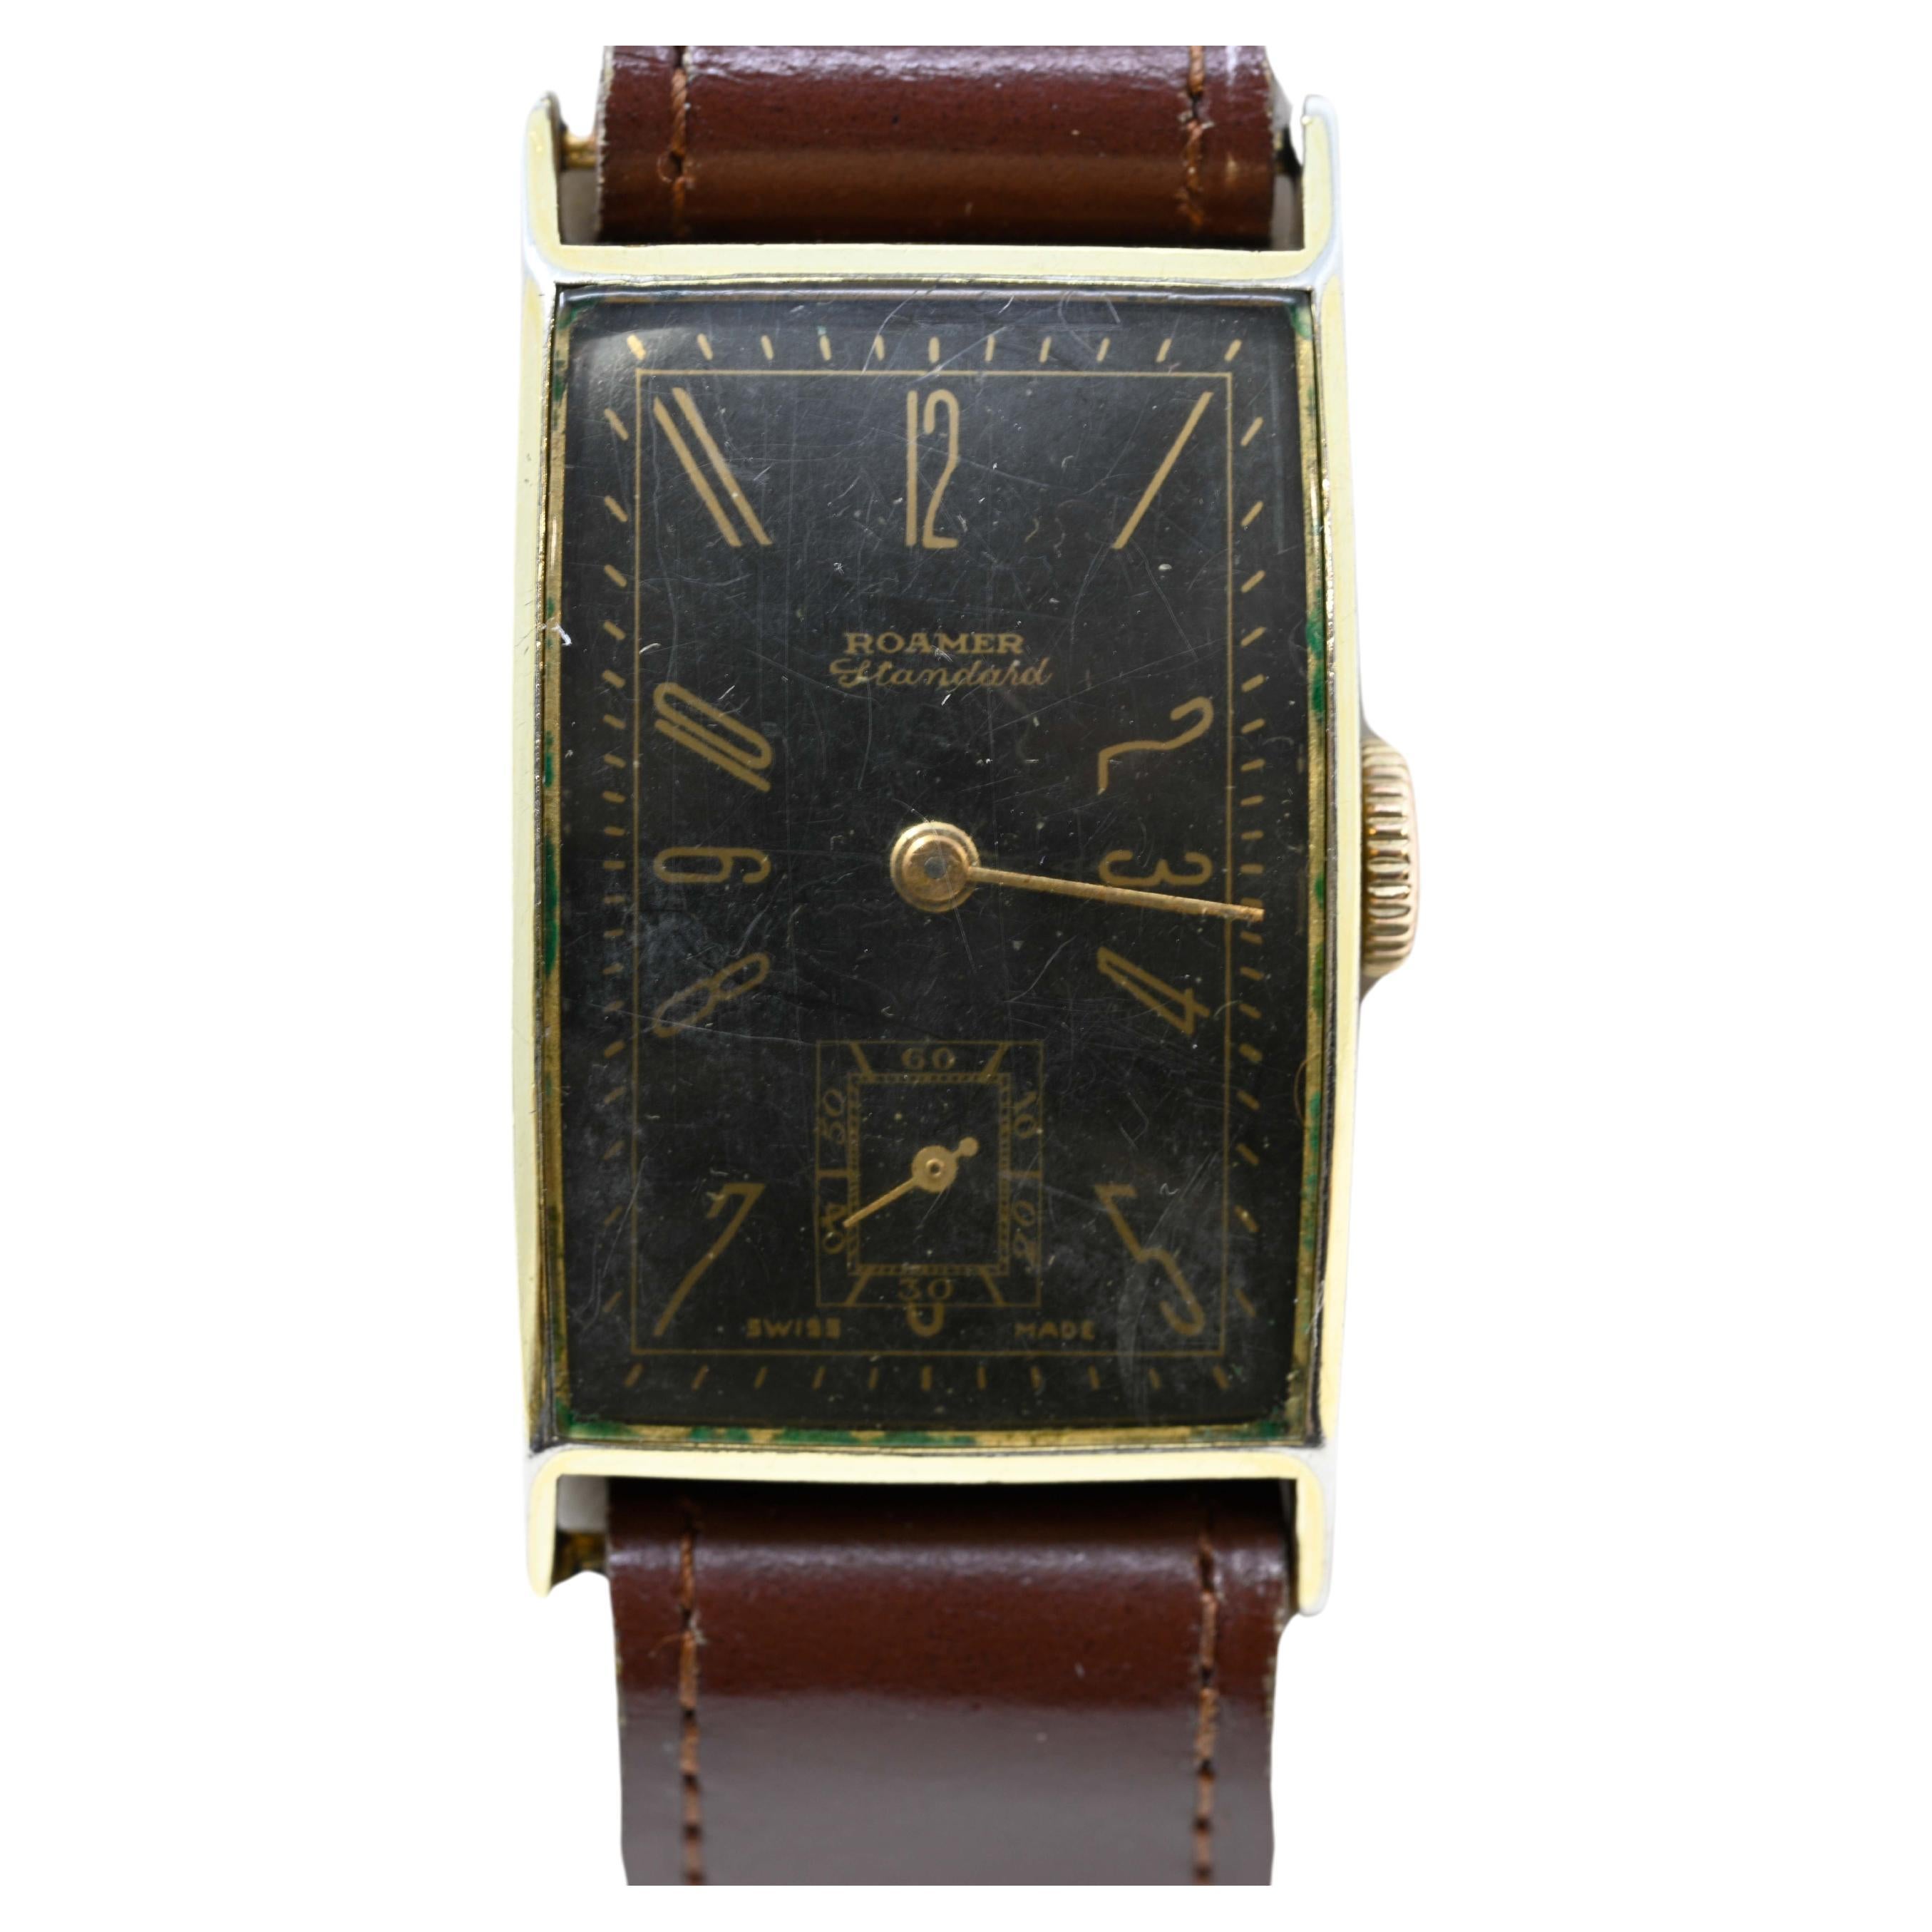 Roamer Standard Art Deco Bauhaus Gold plated Watch Swiss Made circa 1950-60. For Sale